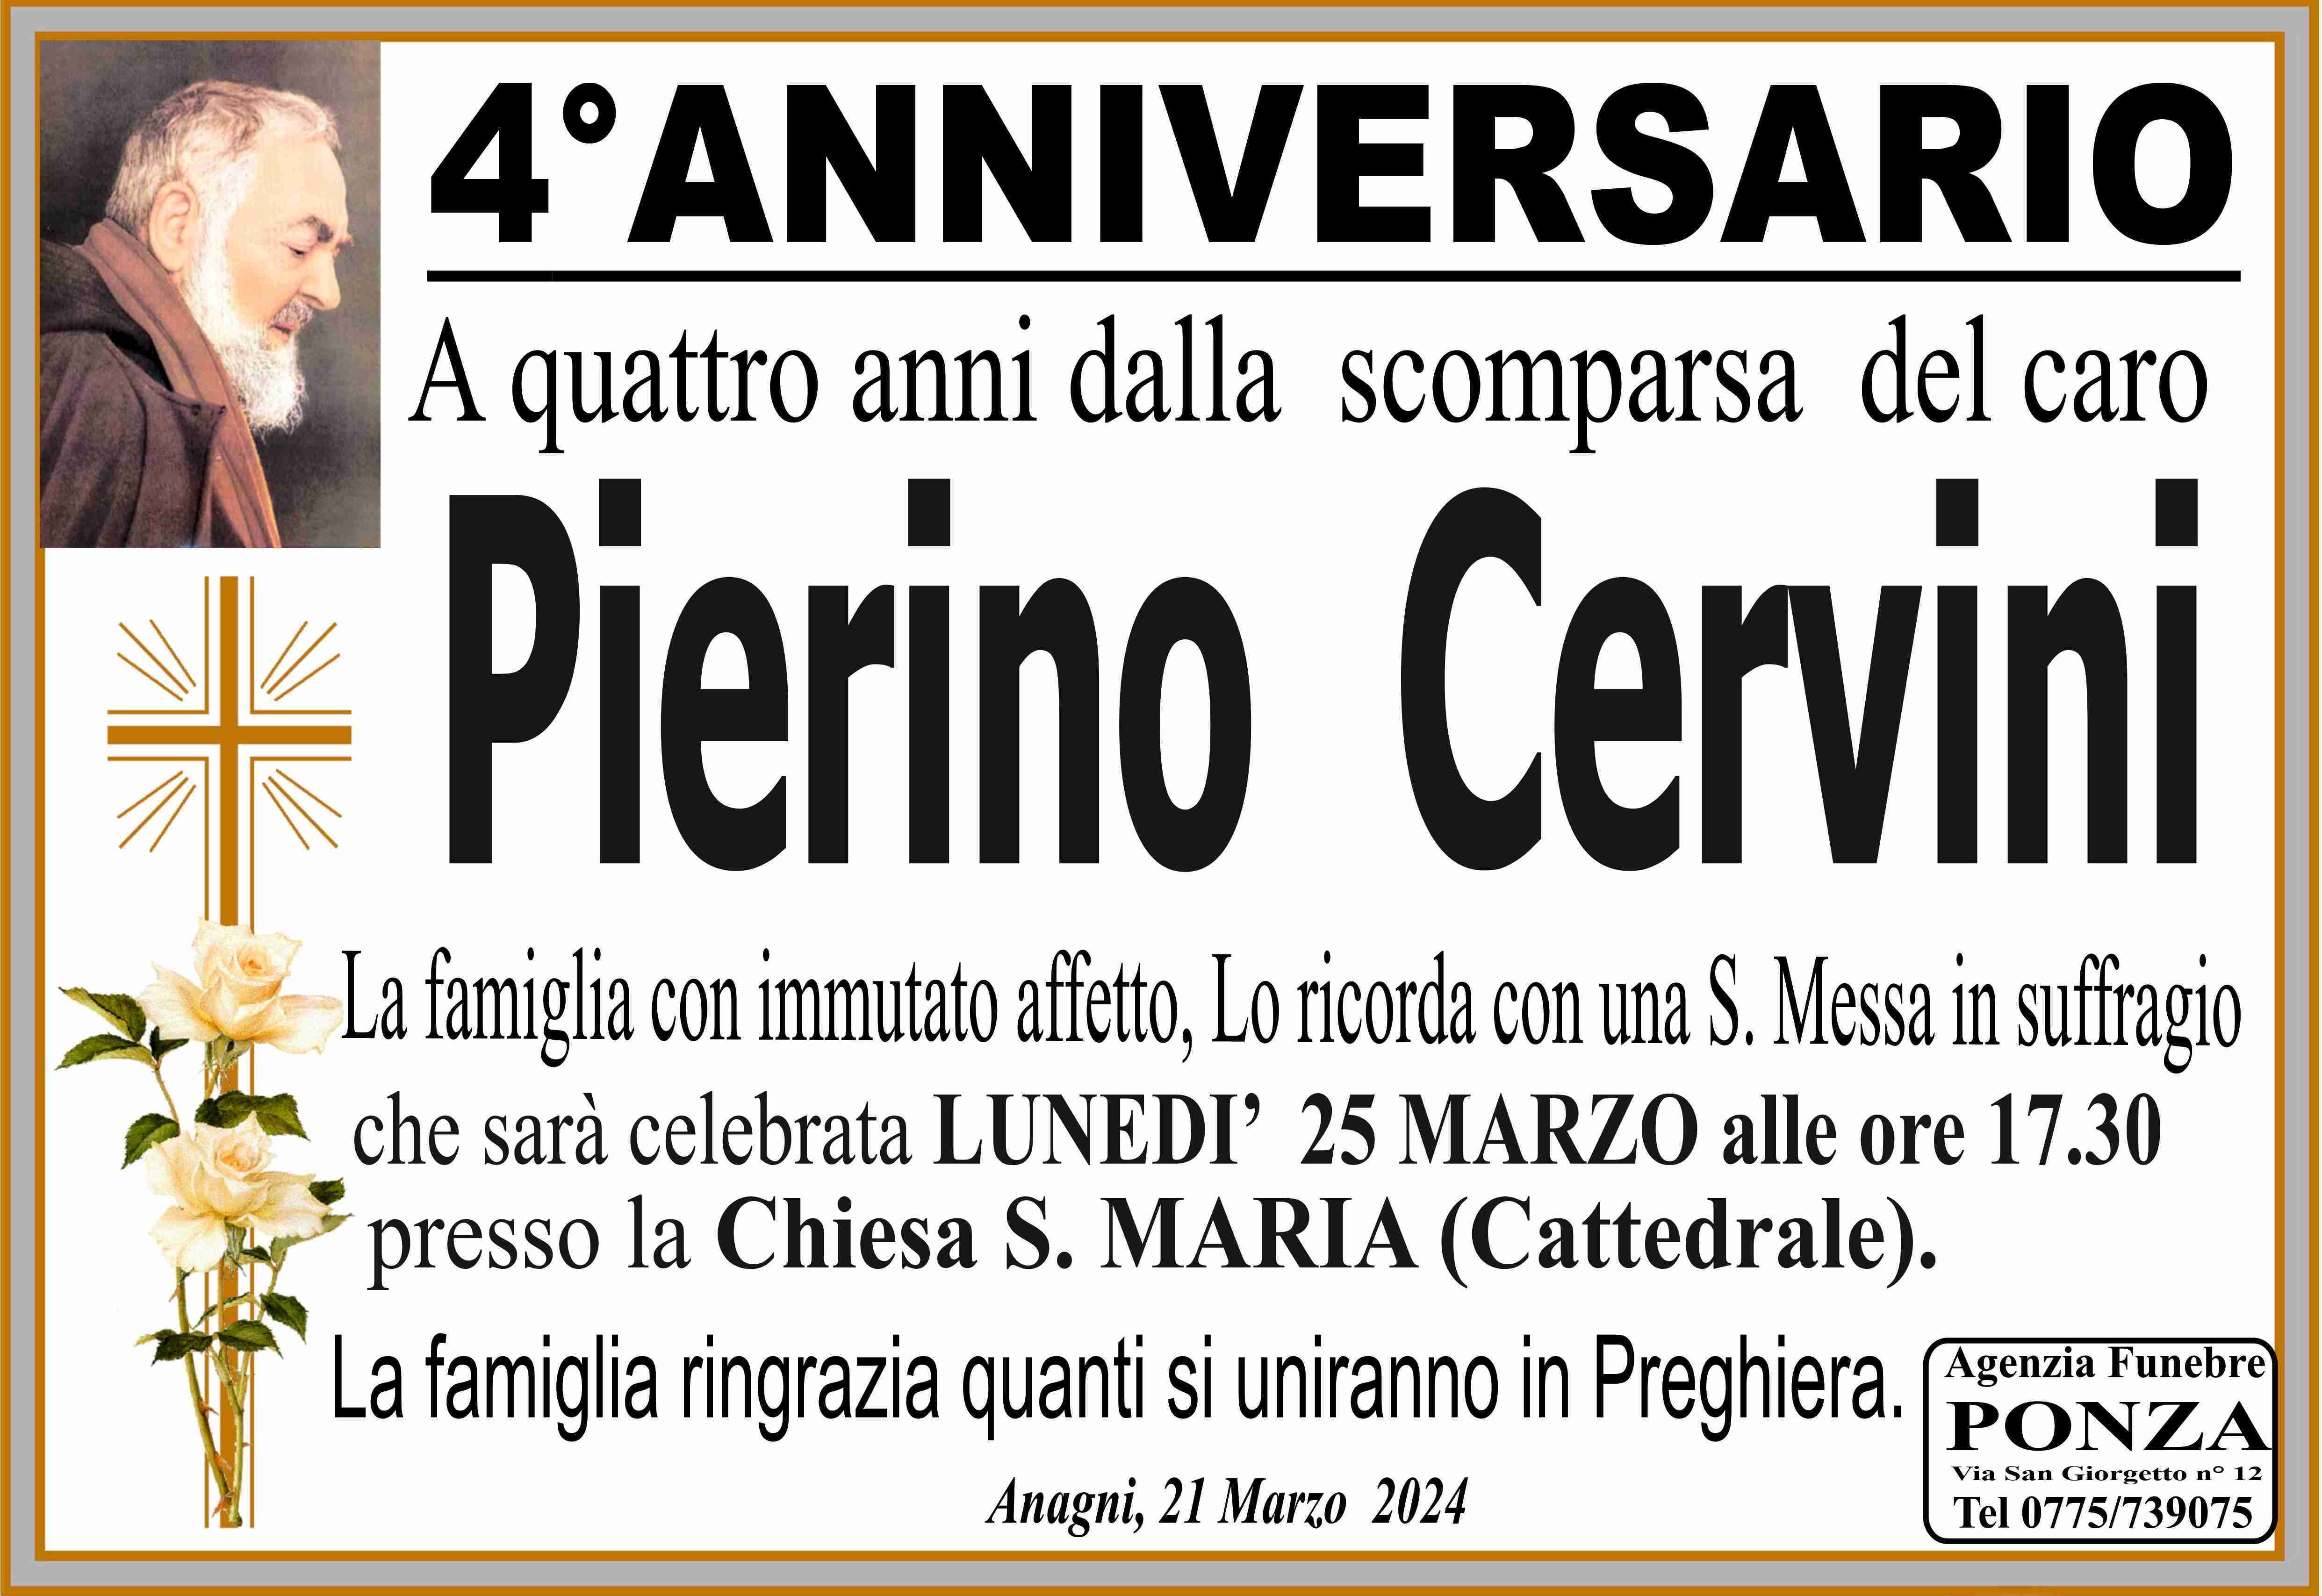 Pierino Cervini